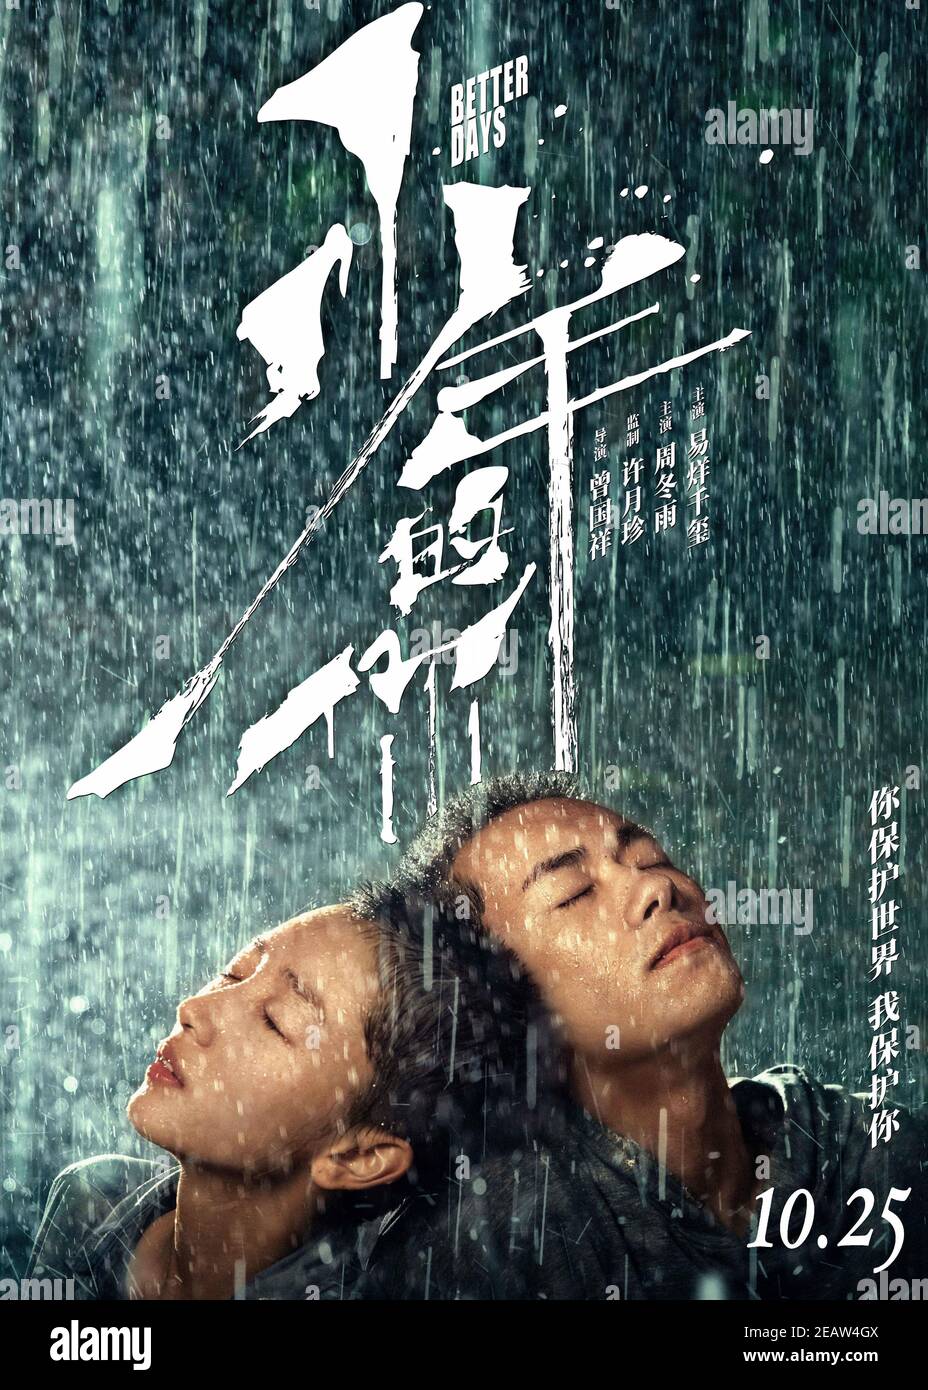 Better Day (2019) dirigida por Derek Tsang y protagonizada por Dongyu Zhou, Jackson Yee y Fang Yin. La adaptación de la novela de Jiu Yuex "en su juventud, en su belleza" sobre una adolescente intimidada forma una amistad poco probable con un joven misterioso. Foto de stock